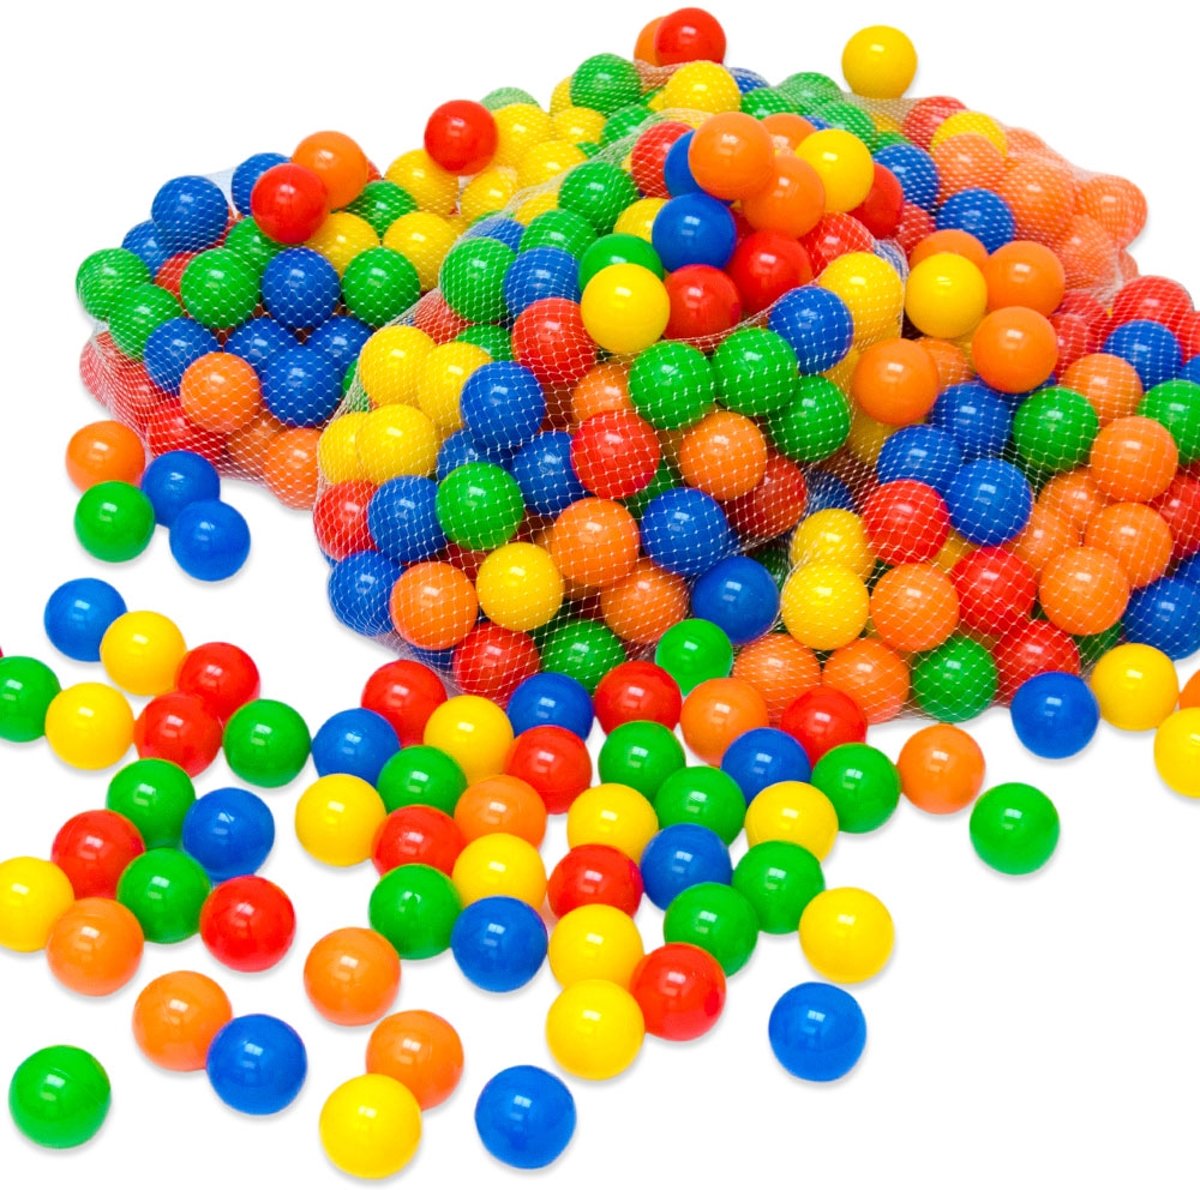 200 Kleurrijke ballenbadballen 5,5cm   plastic ballen kinderballen babyballen   kinderen baby puppy